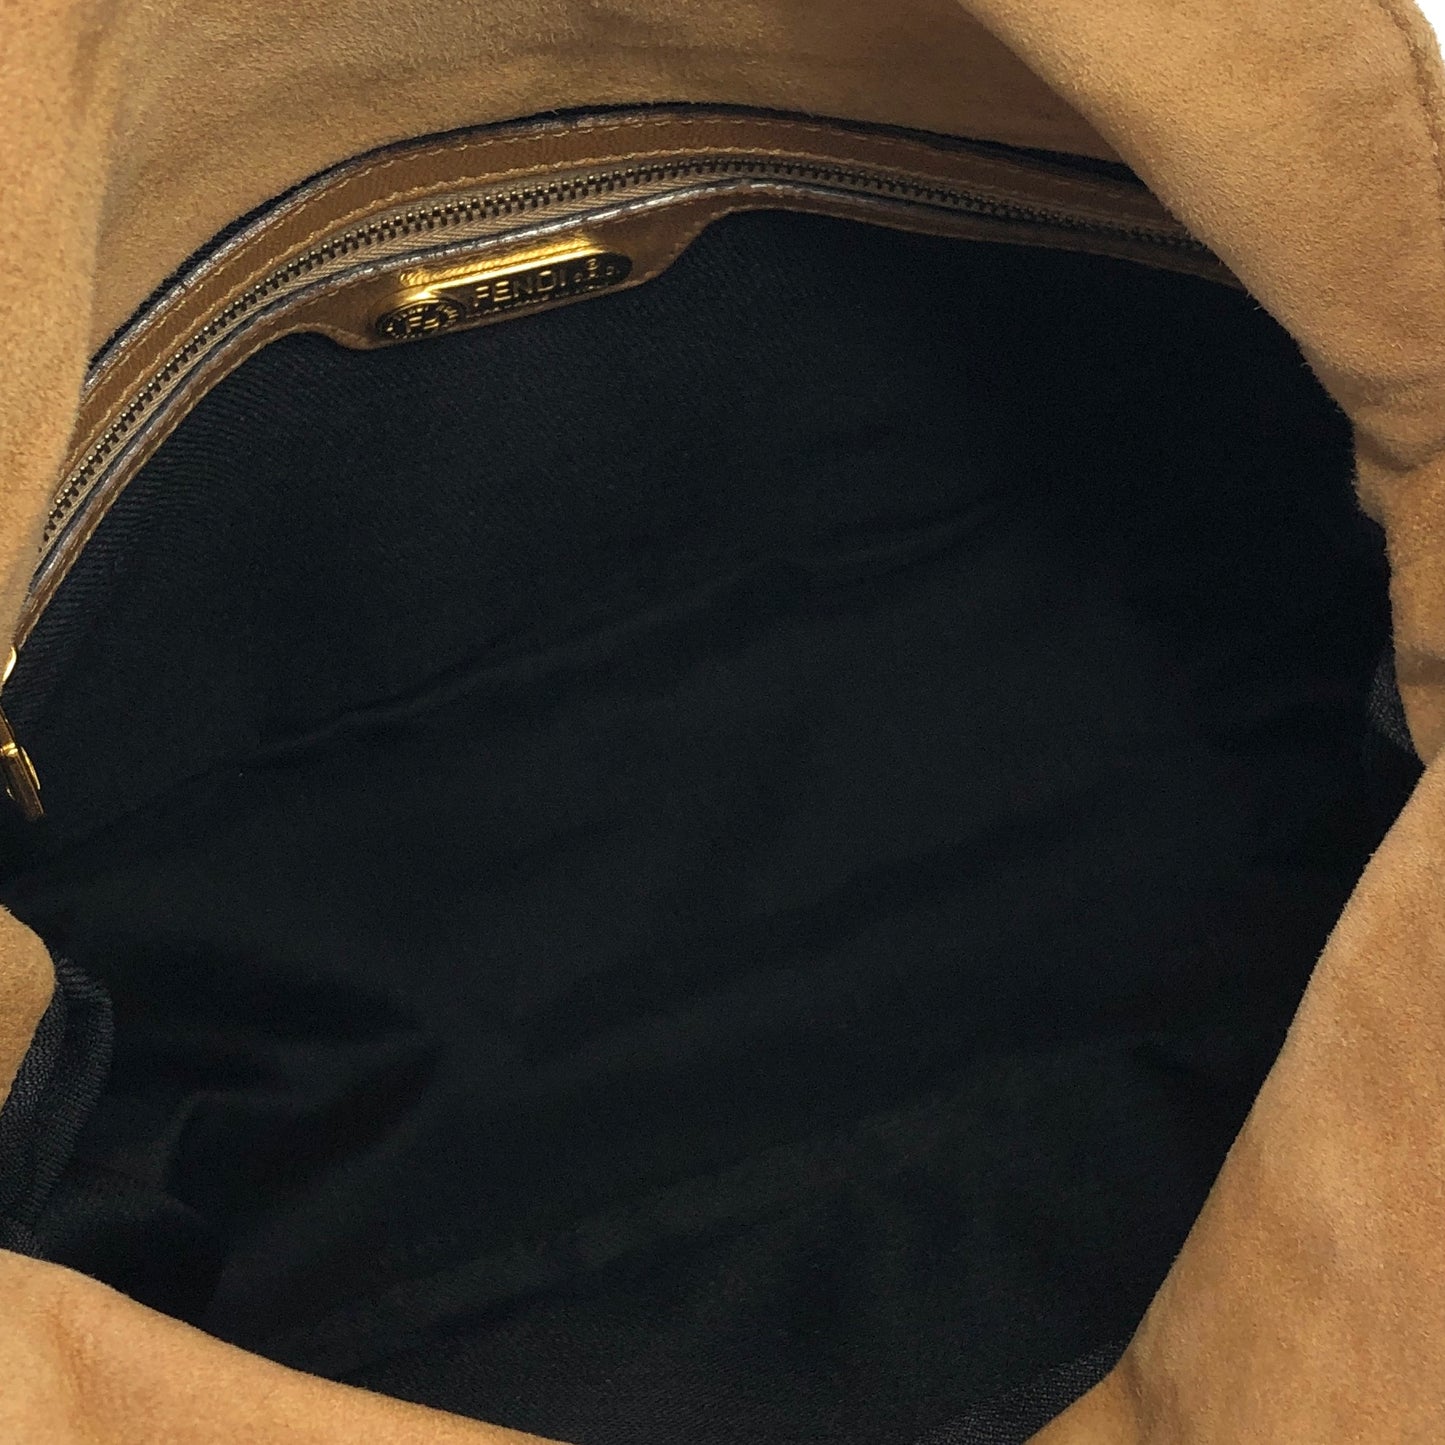 FENDI Mamma Baguette Suede Leather Shoulder bag Hobobag Beige Vintage 5k8avr